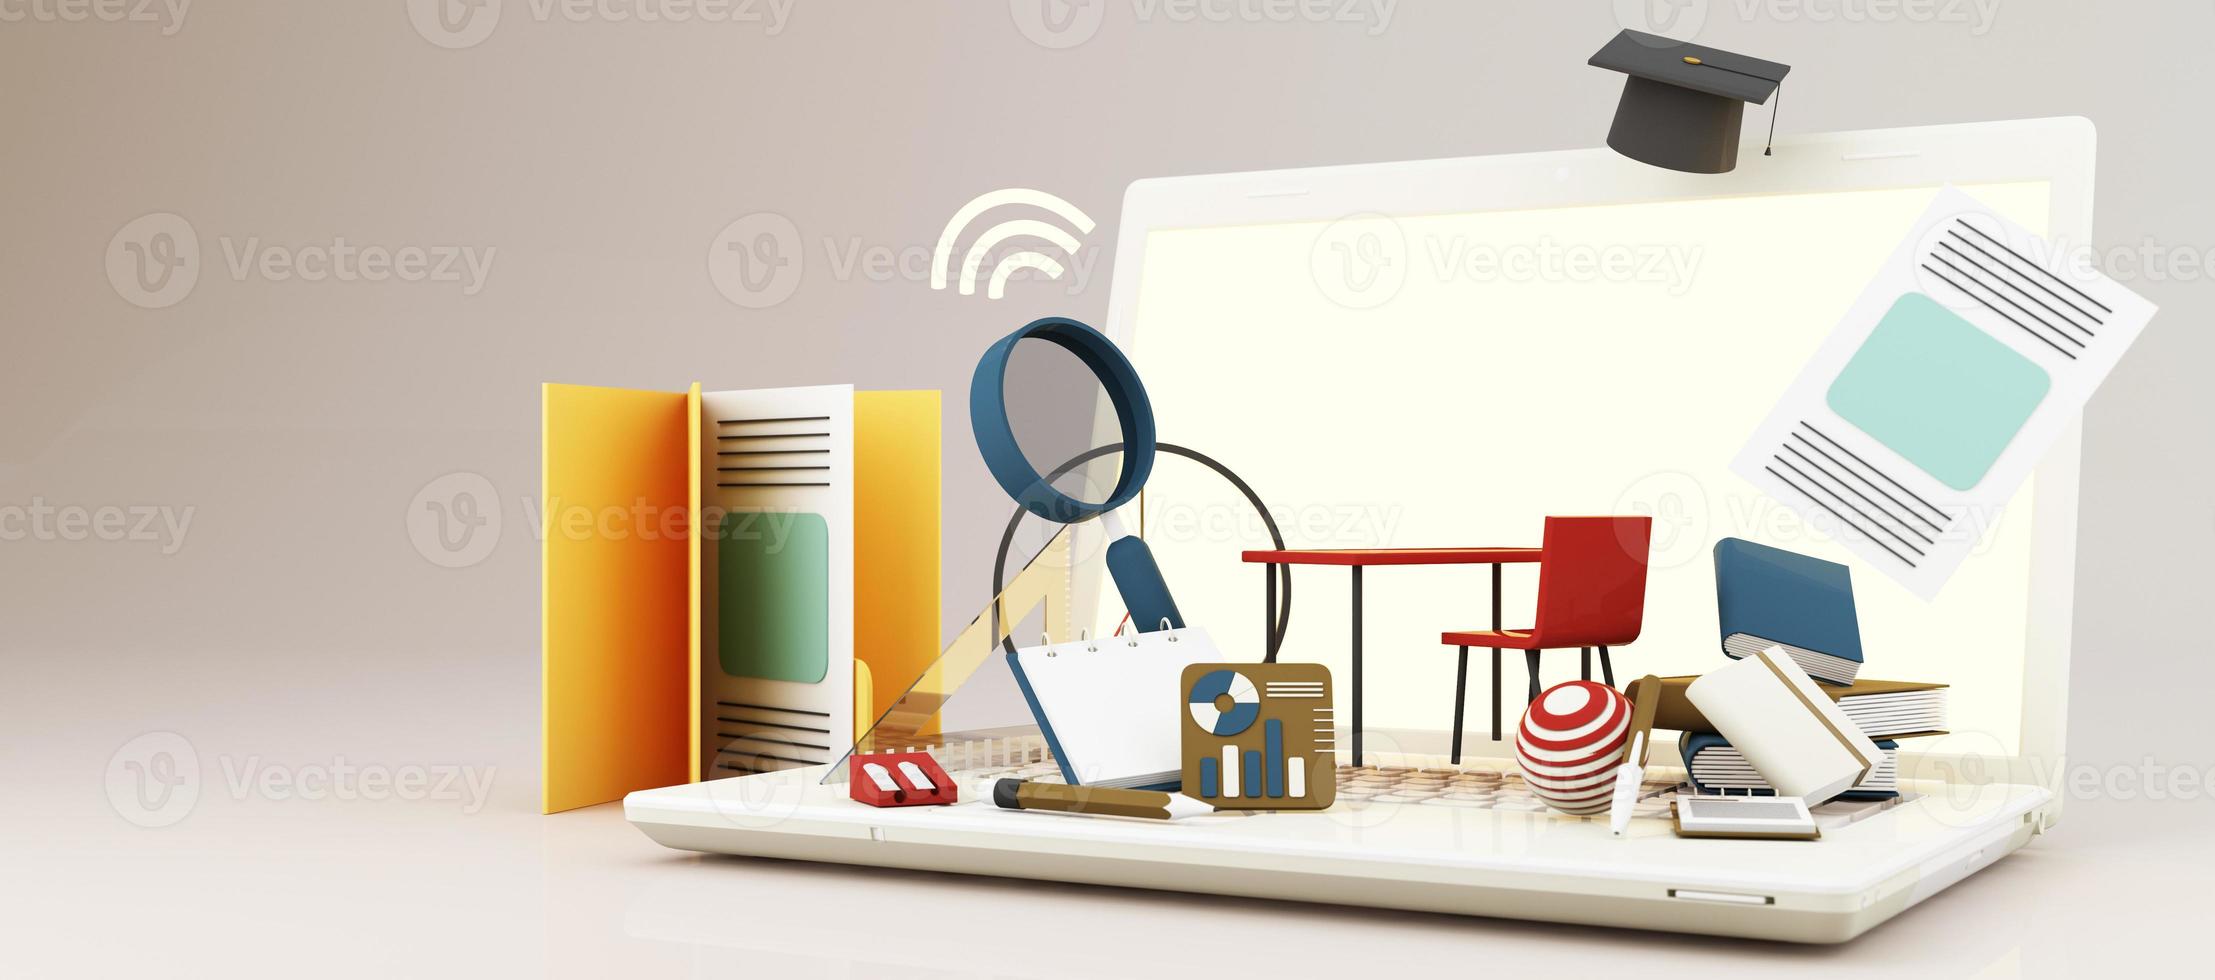 e-learning concept met laptop en wifi-symbool omringd door afgestudeerde pet, open boeken, ballon, liniaal, statistische grafiek, potlood en vergrootglas op blauwe en gele kleurtoon 3d render foto